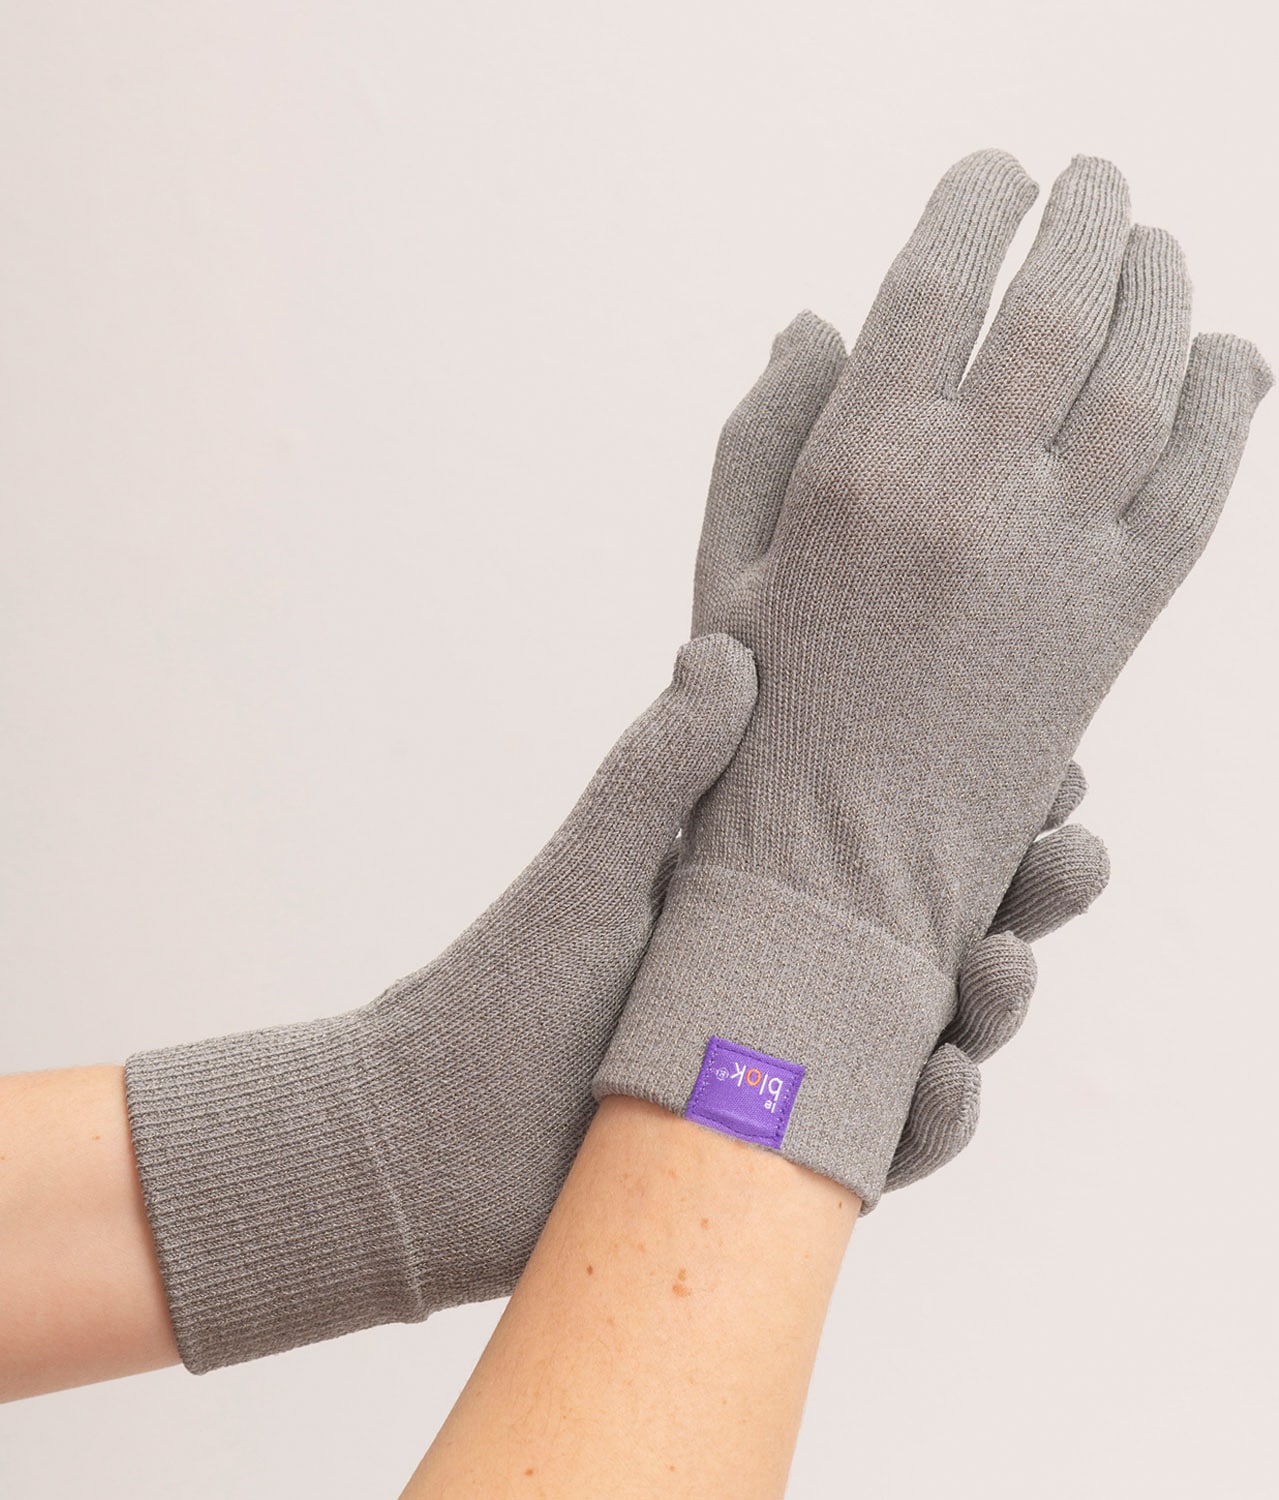 EMF Shielding Gloves from Leblok®